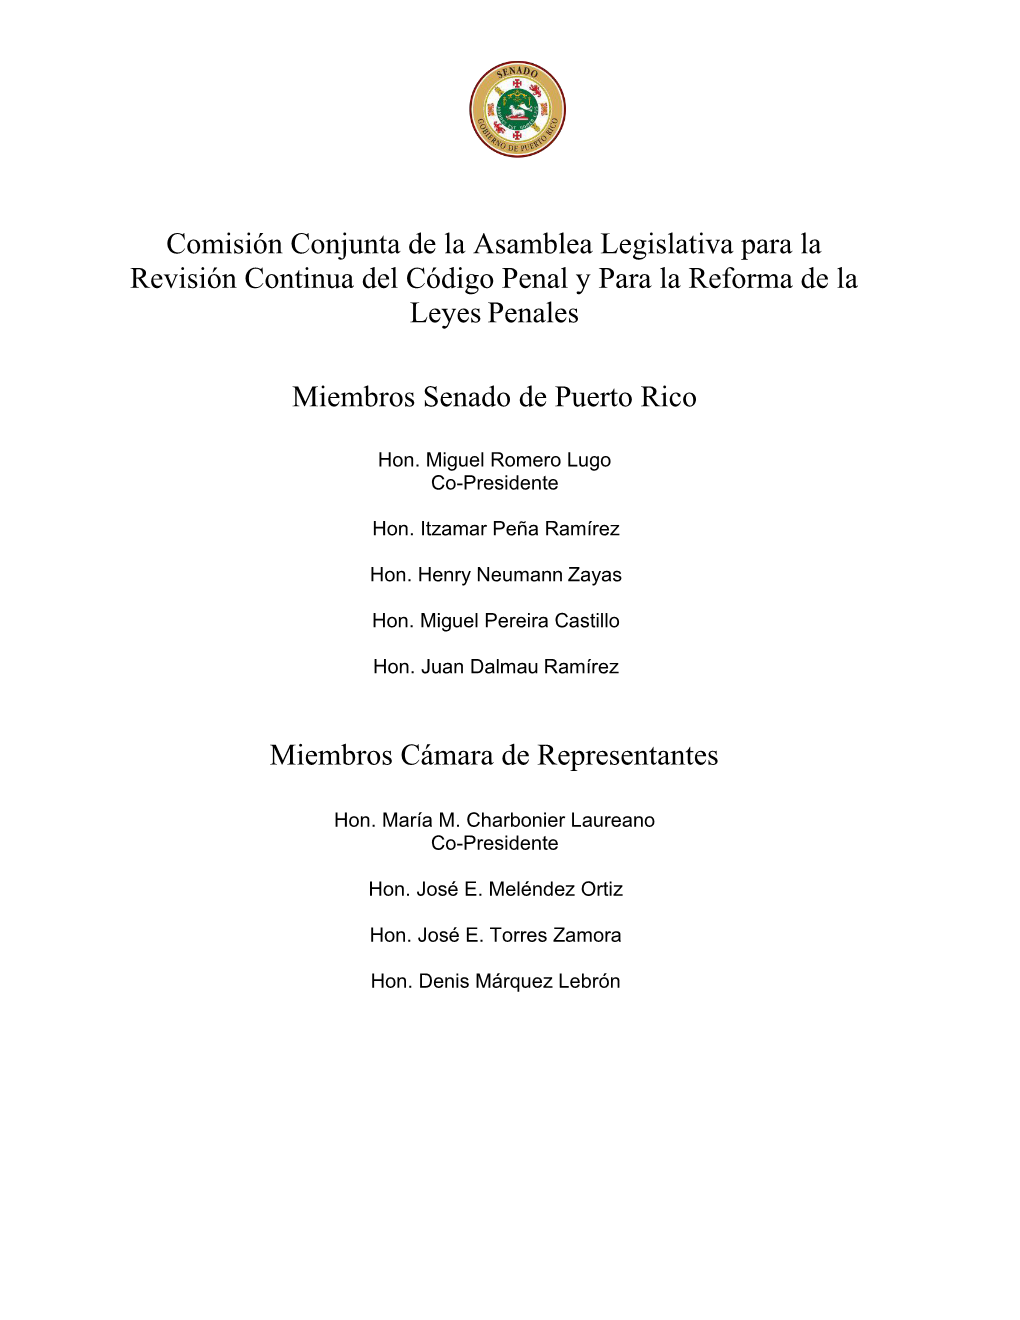 Comisión Conjunta De La Asamblea Legislativa Para La Revisión Continua Del Código Penal Y Para La Reforma De La Leyes Penales